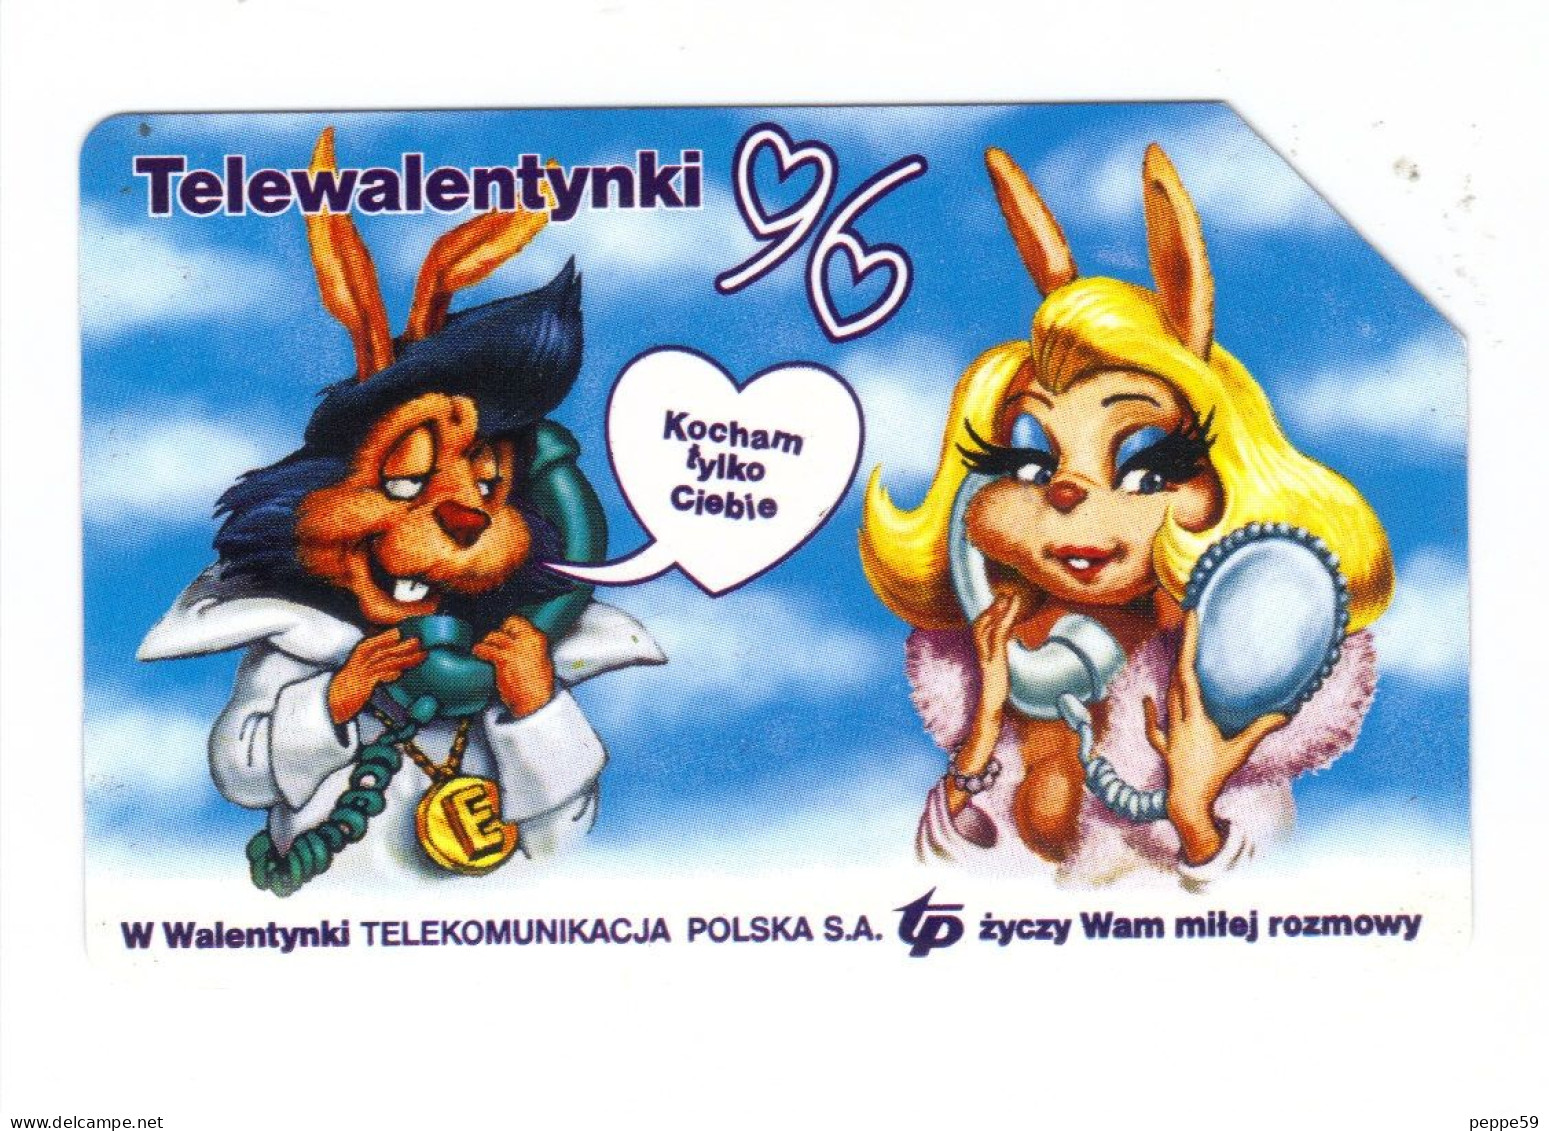 Carta Telefonica Polonia - Telewalentynki 96 - Polonia